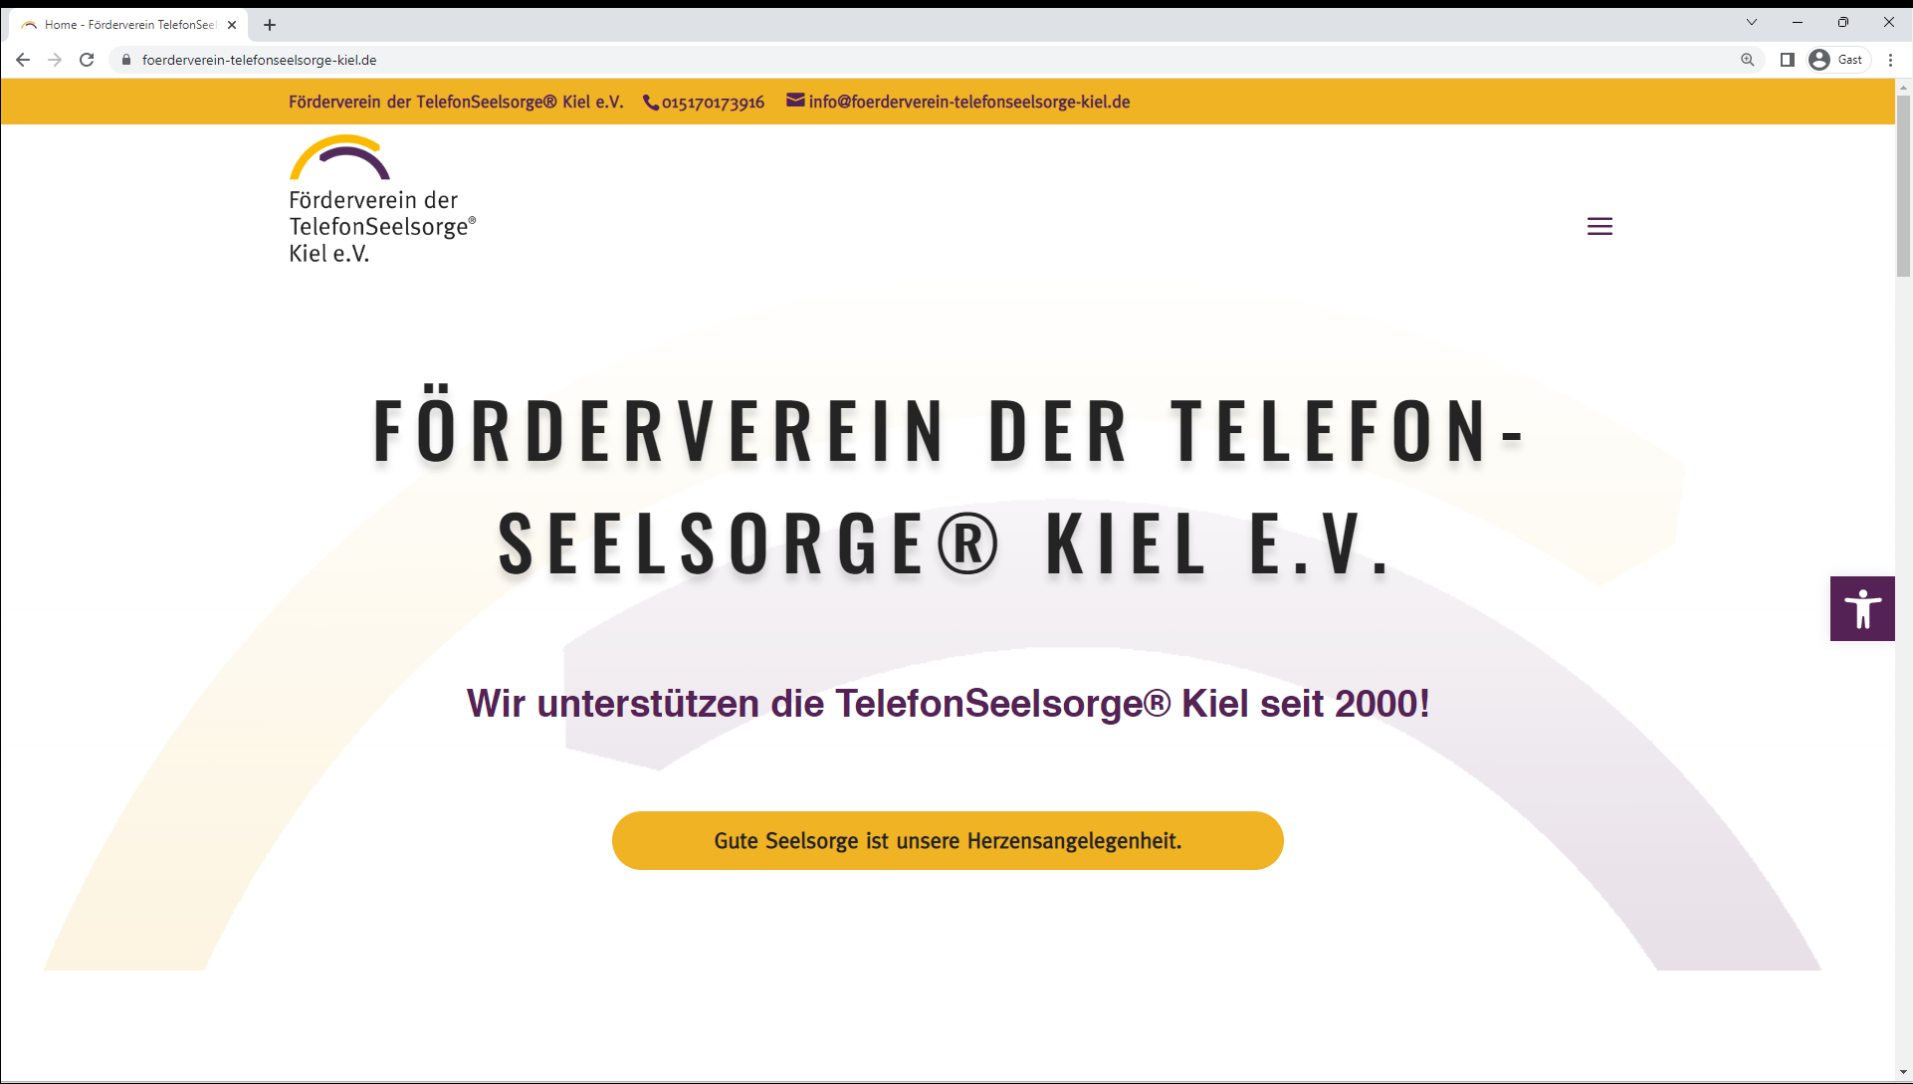 Förderverein der TelefonSeelsorge® Kiel e.V.